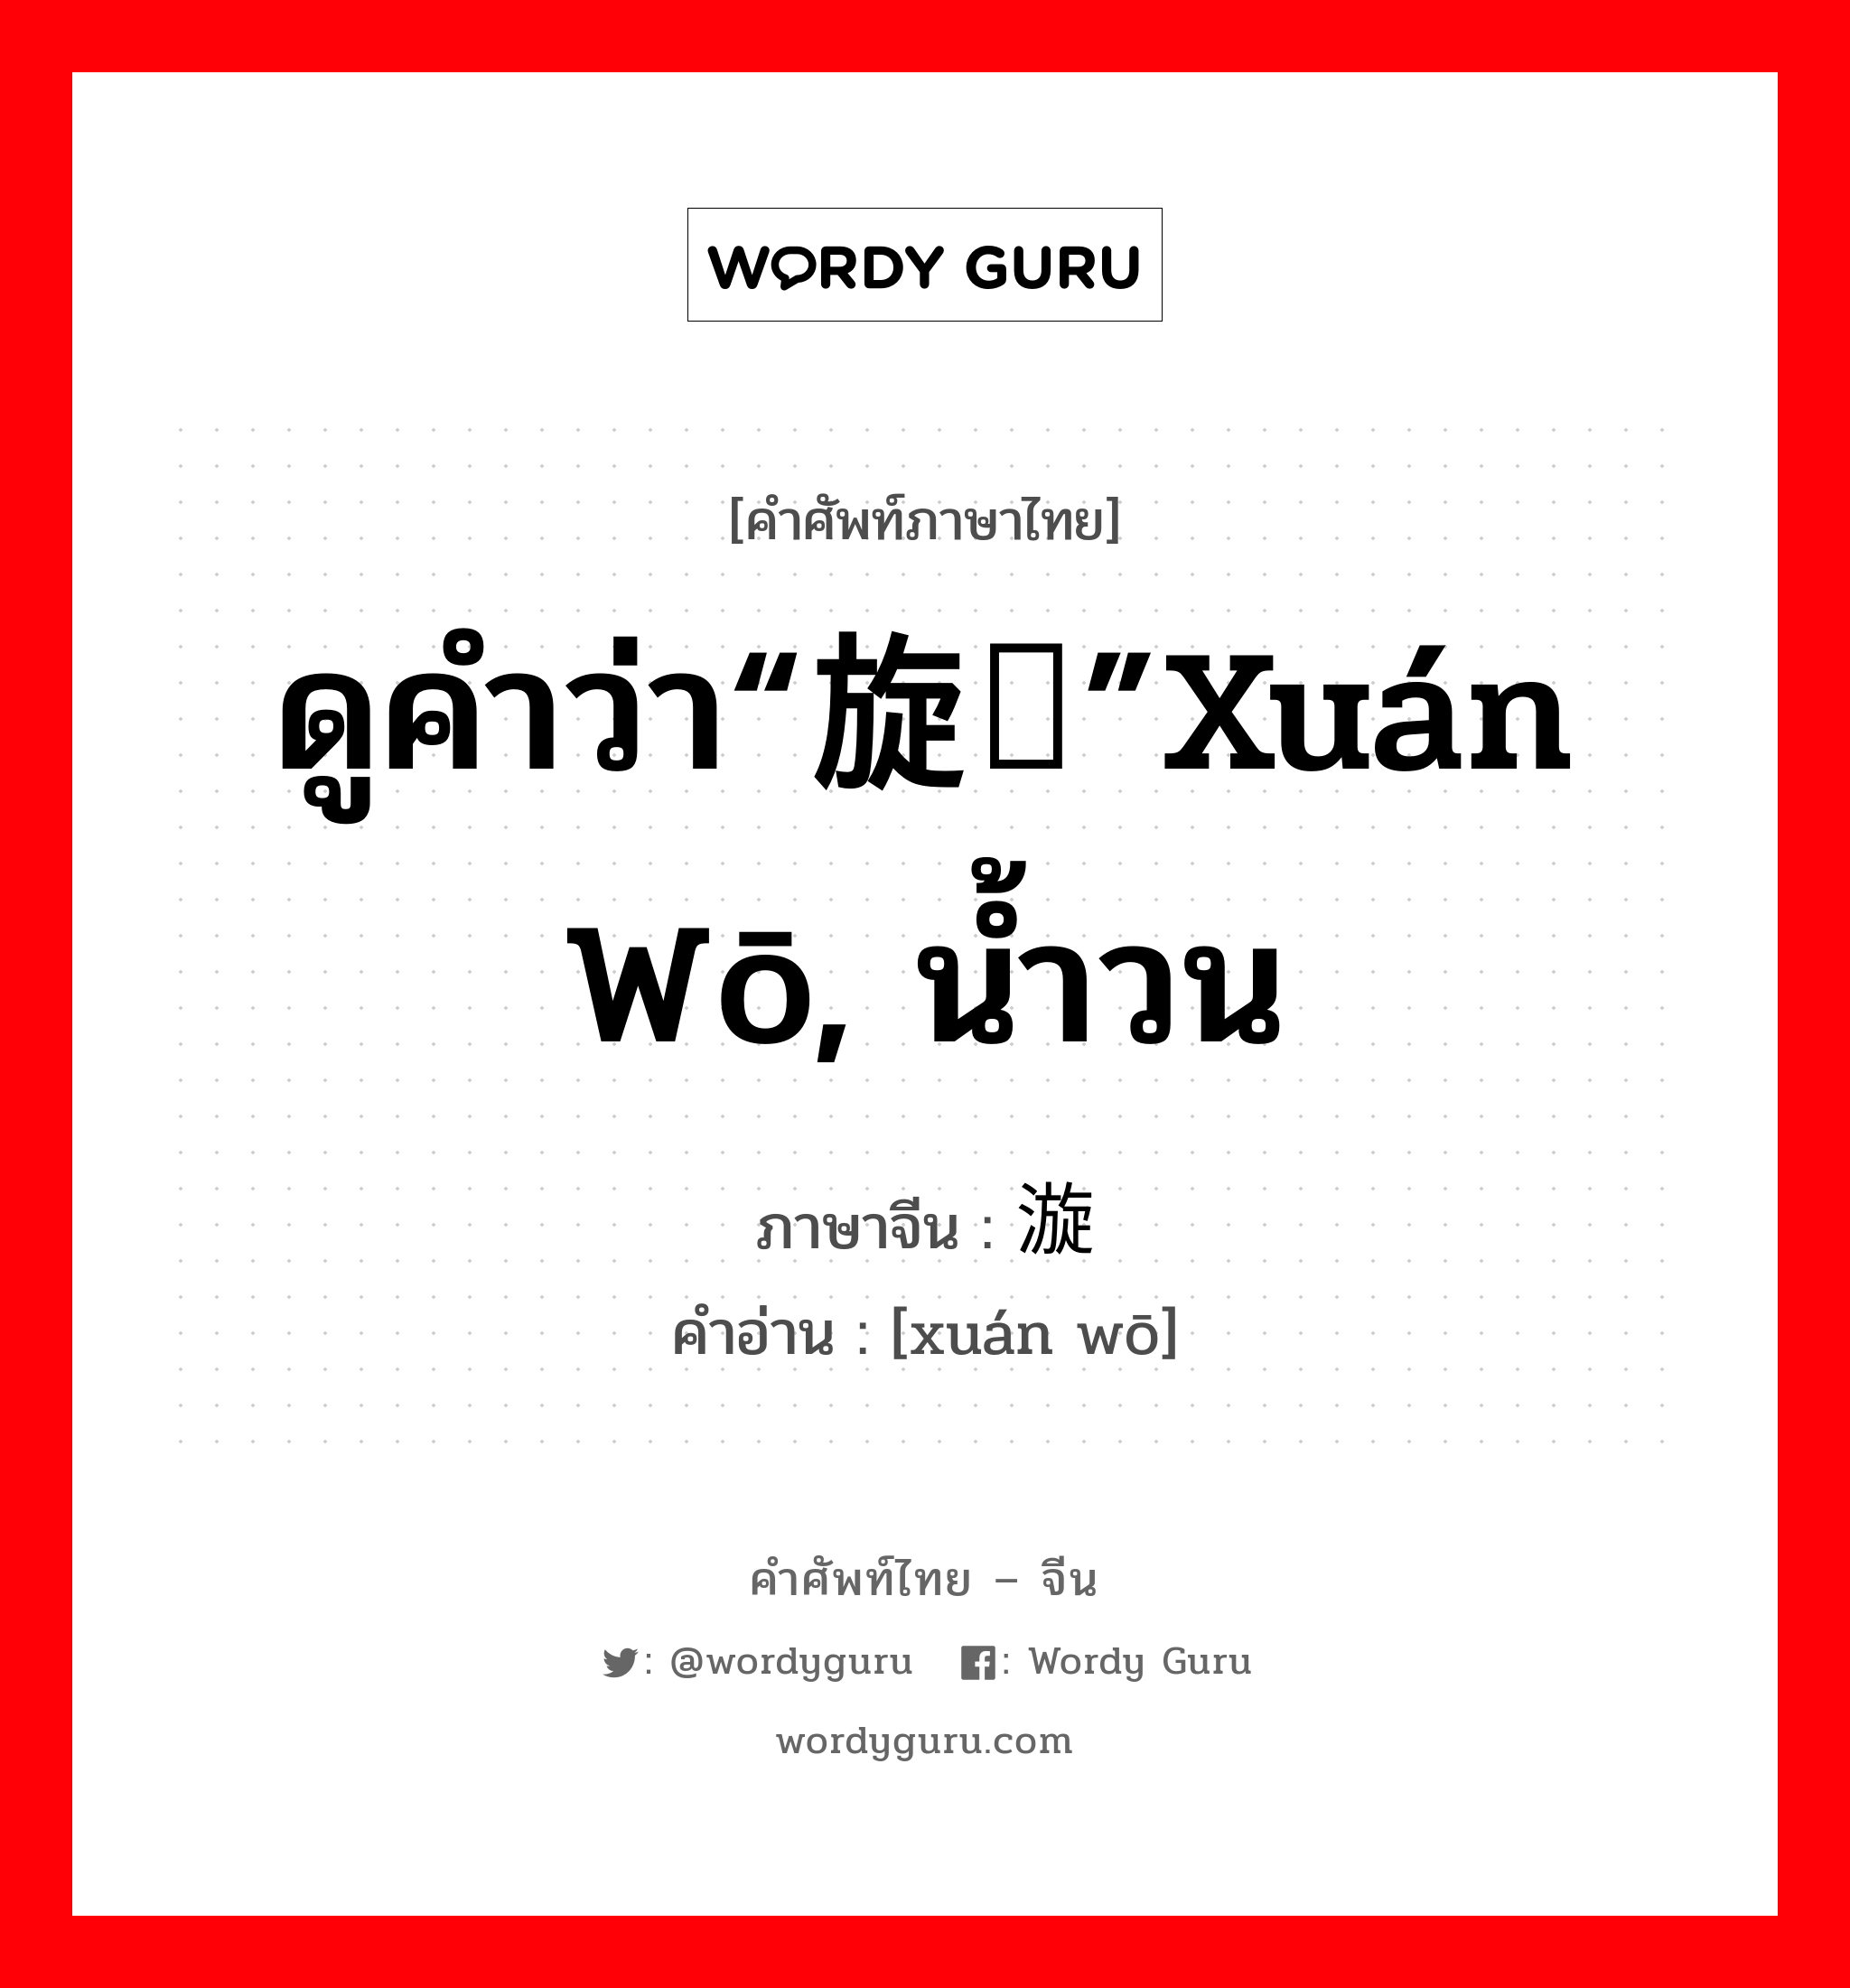 ดูคำว่า“旋涡”xuán wō, น้ำวน ภาษาจีนคืออะไร, คำศัพท์ภาษาไทย - จีน ดูคำว่า“旋涡”xuán wō, น้ำวน ภาษาจีน 漩涡 คำอ่าน [xuán wō]